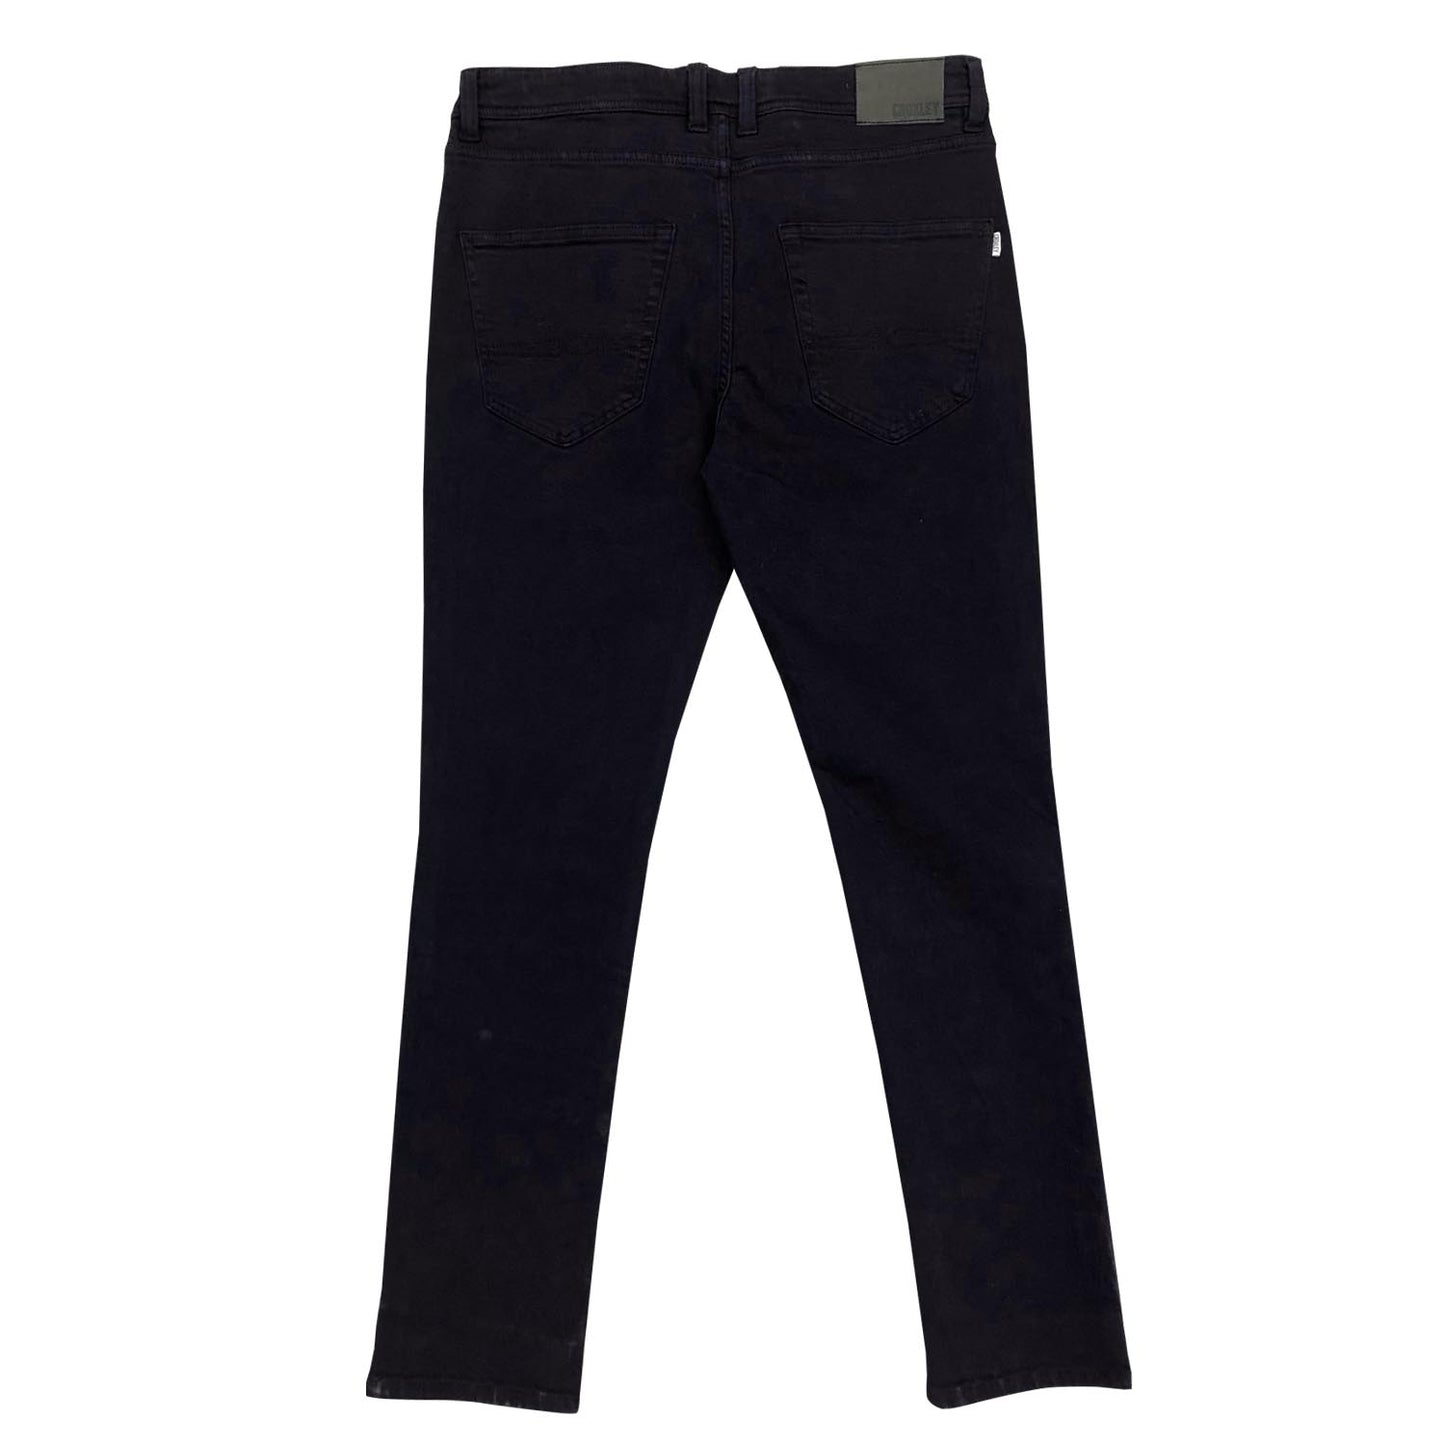 CROXLEY - Slim Fit Cotton Bull Jean - LabelledUp.com